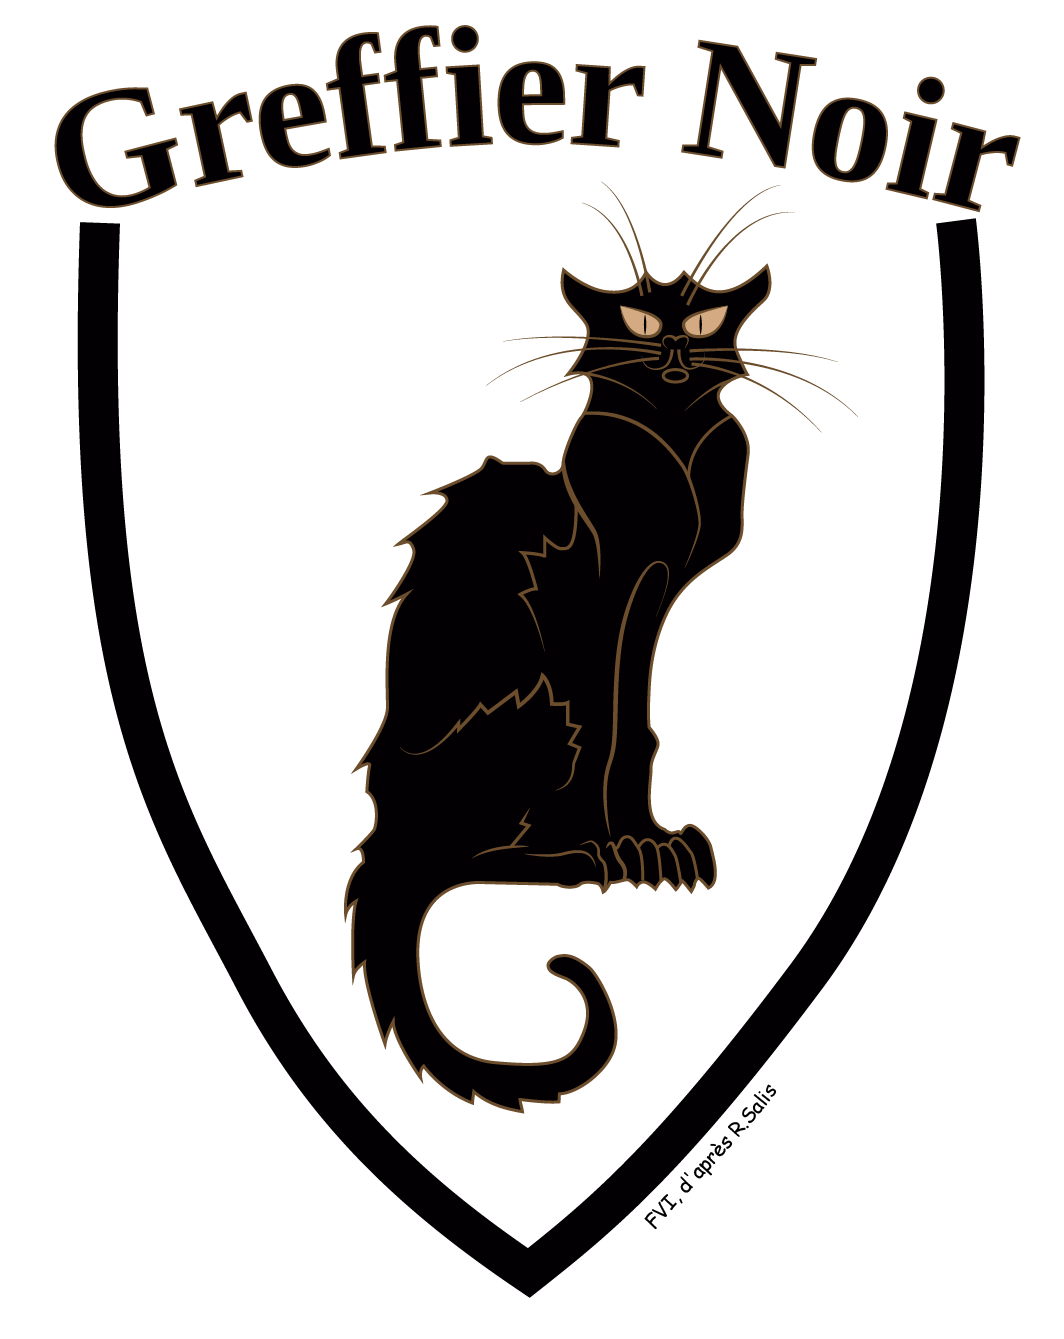 Le blason du site Le Greffier Noir, réalisé par FVI d'après Le Chat Noir de Salis. Le Greffier Noir a été fondé le 20 mars 2015